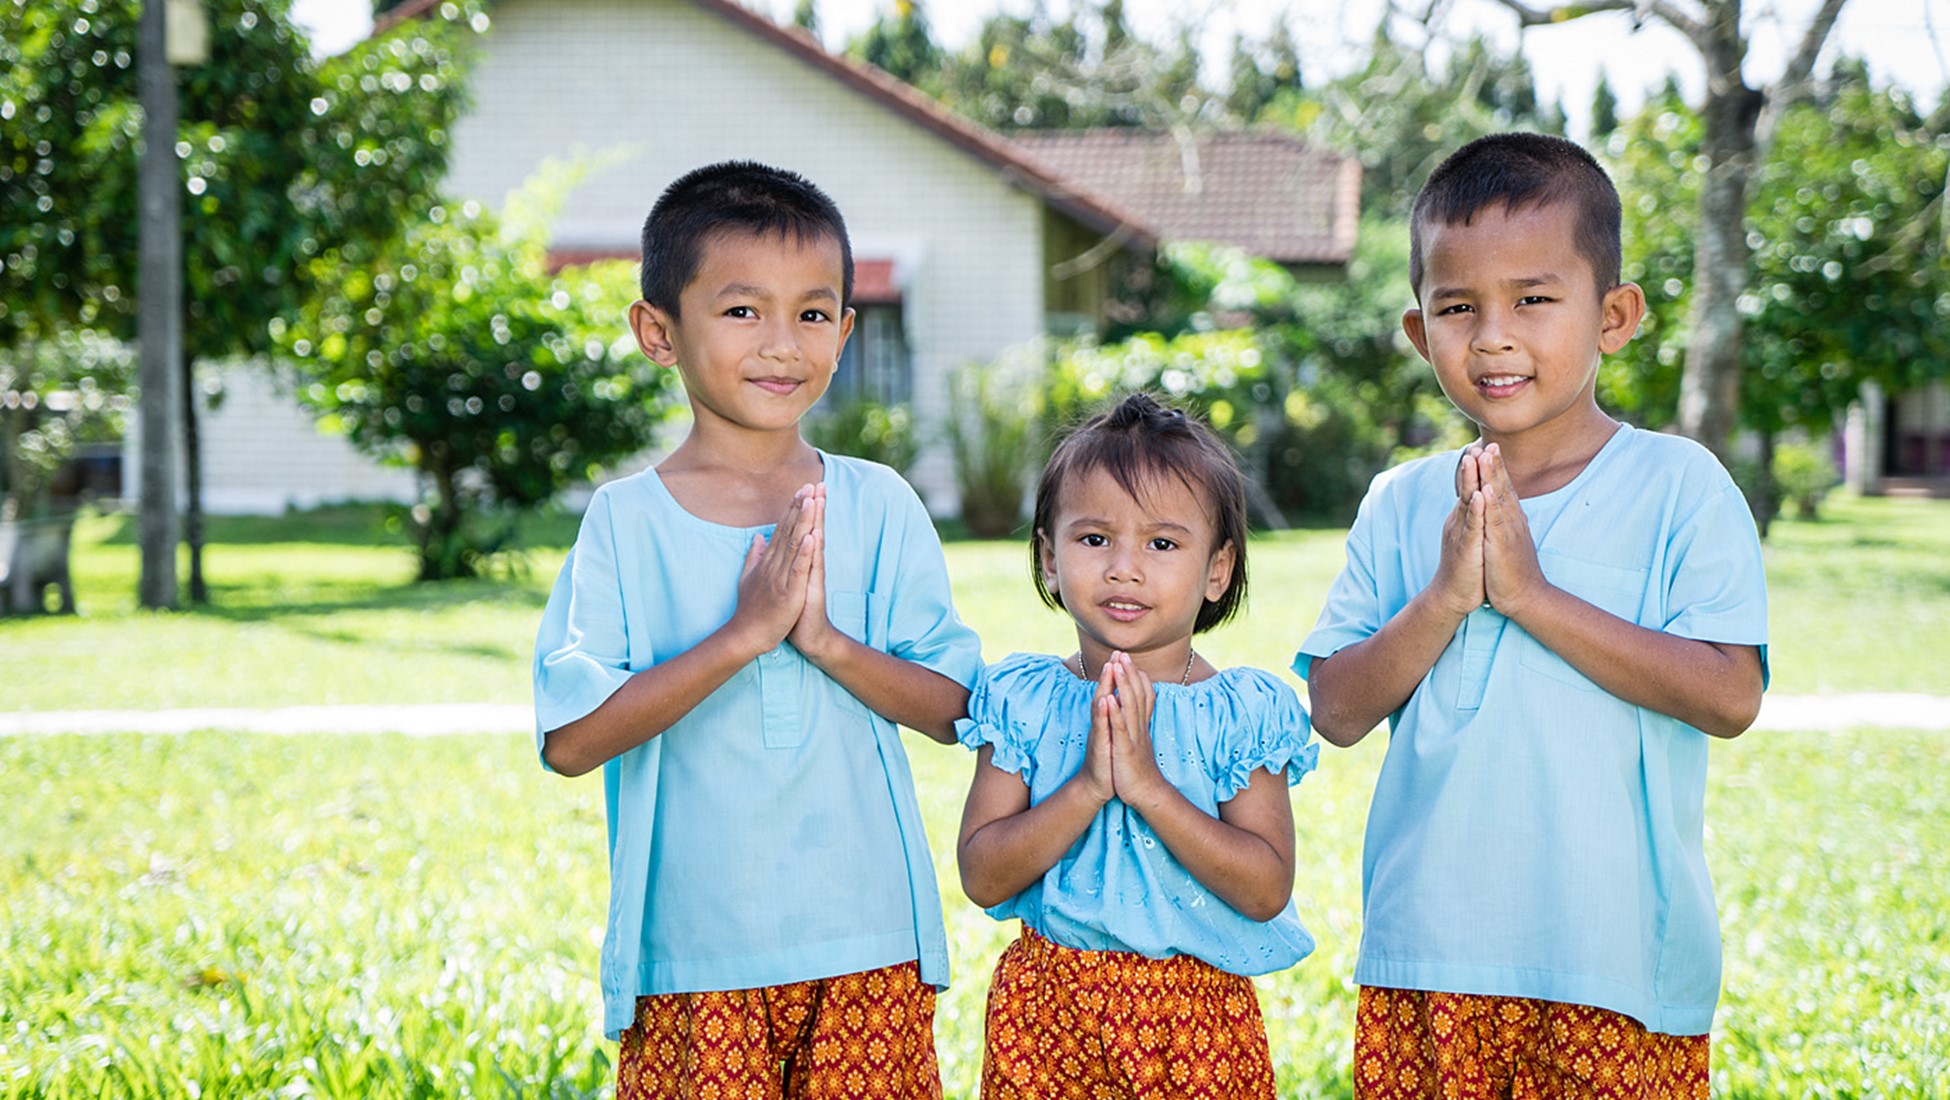 SOS Children's Villages Thailand